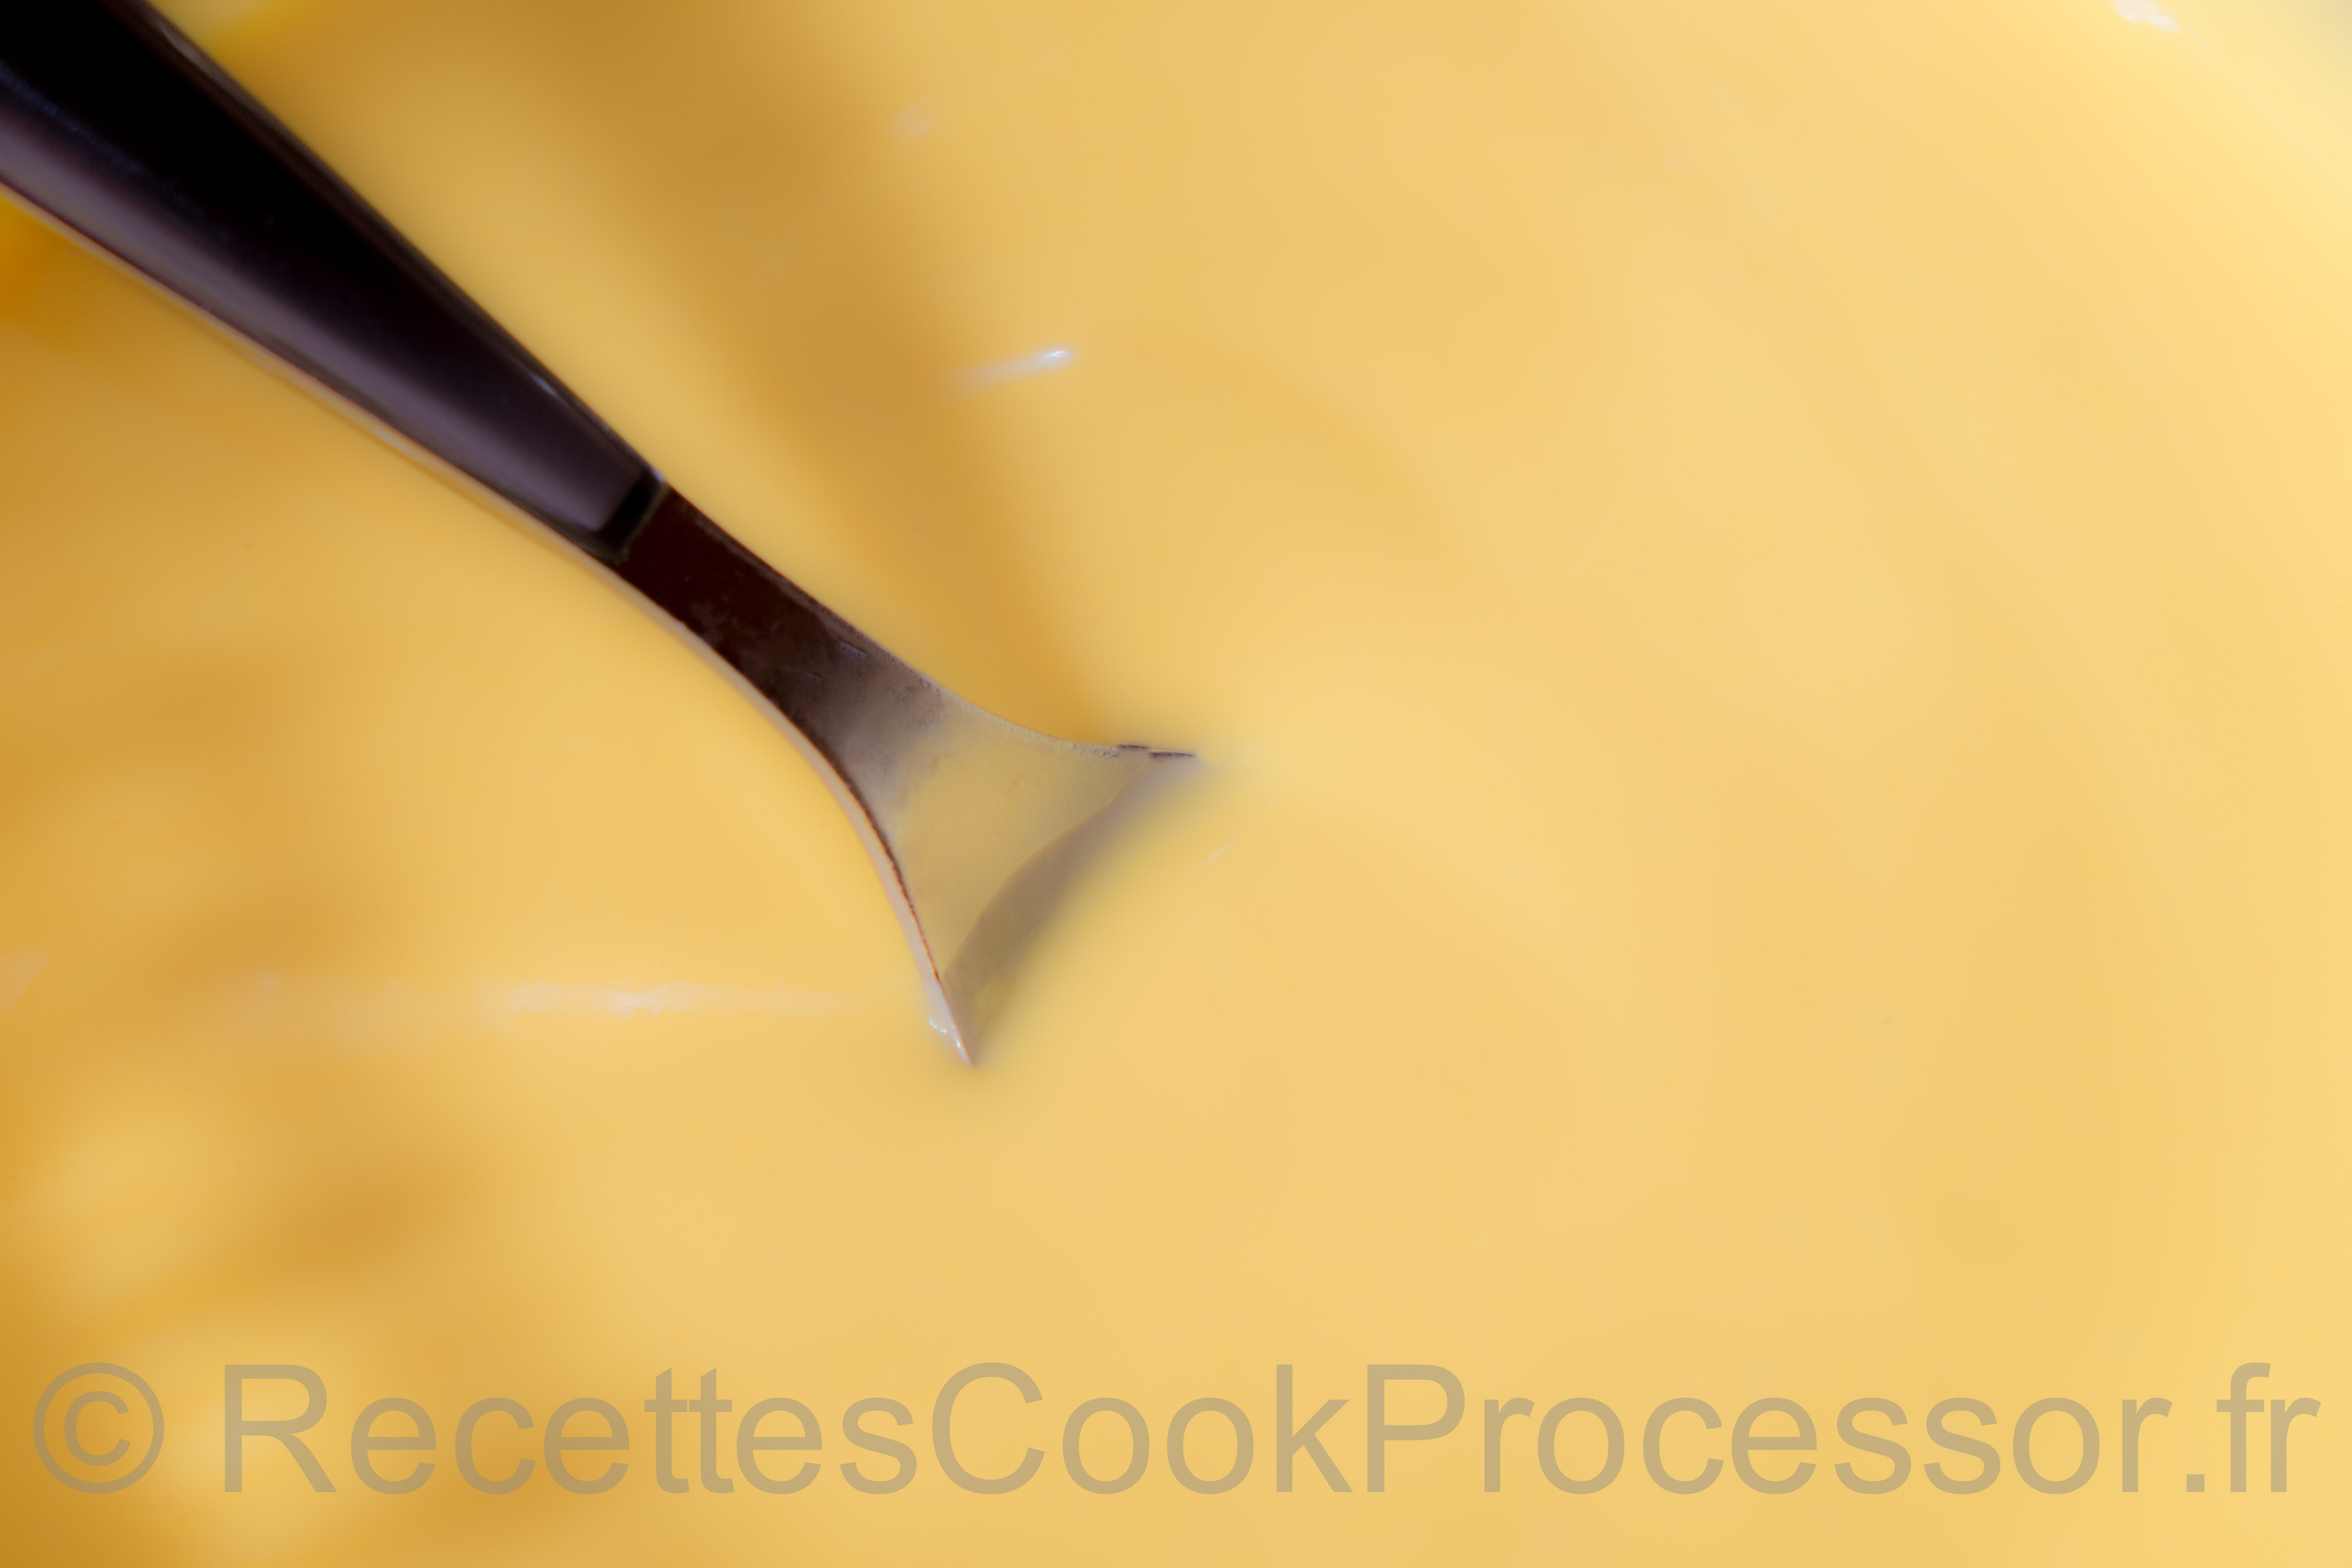 Crème Pâtissière au Cook Processor de KitchenAid